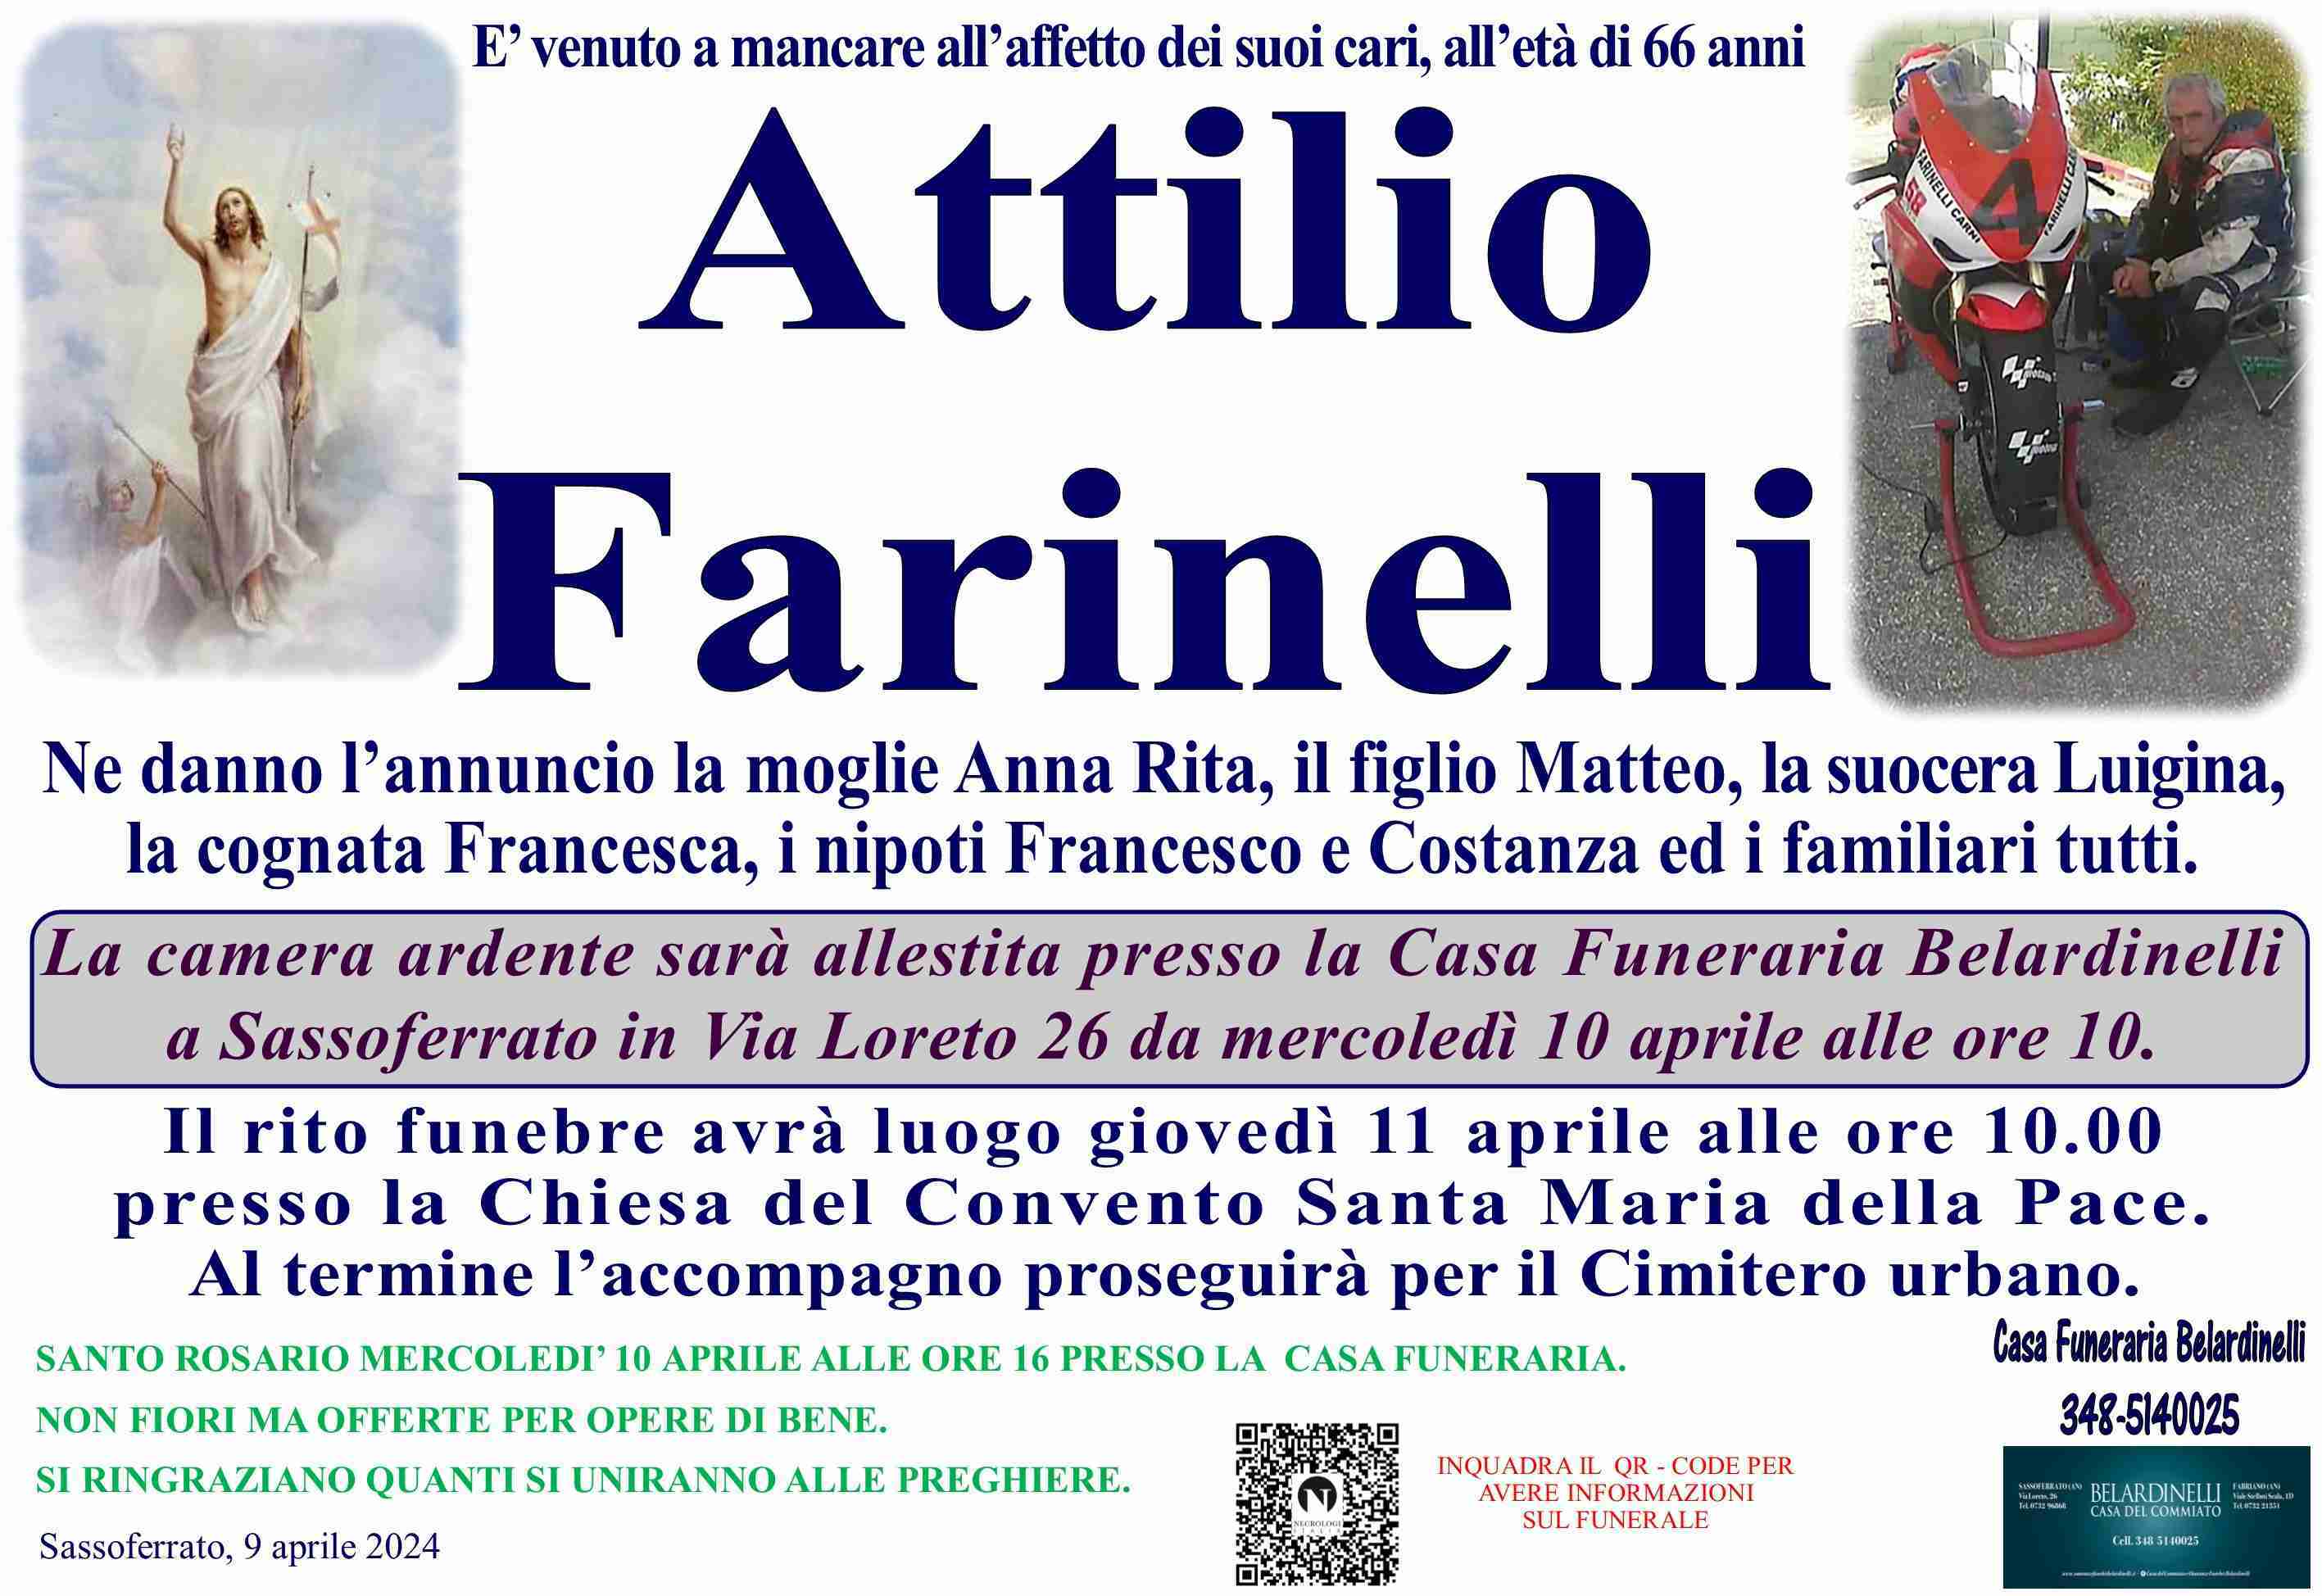 Attilio Farinelli